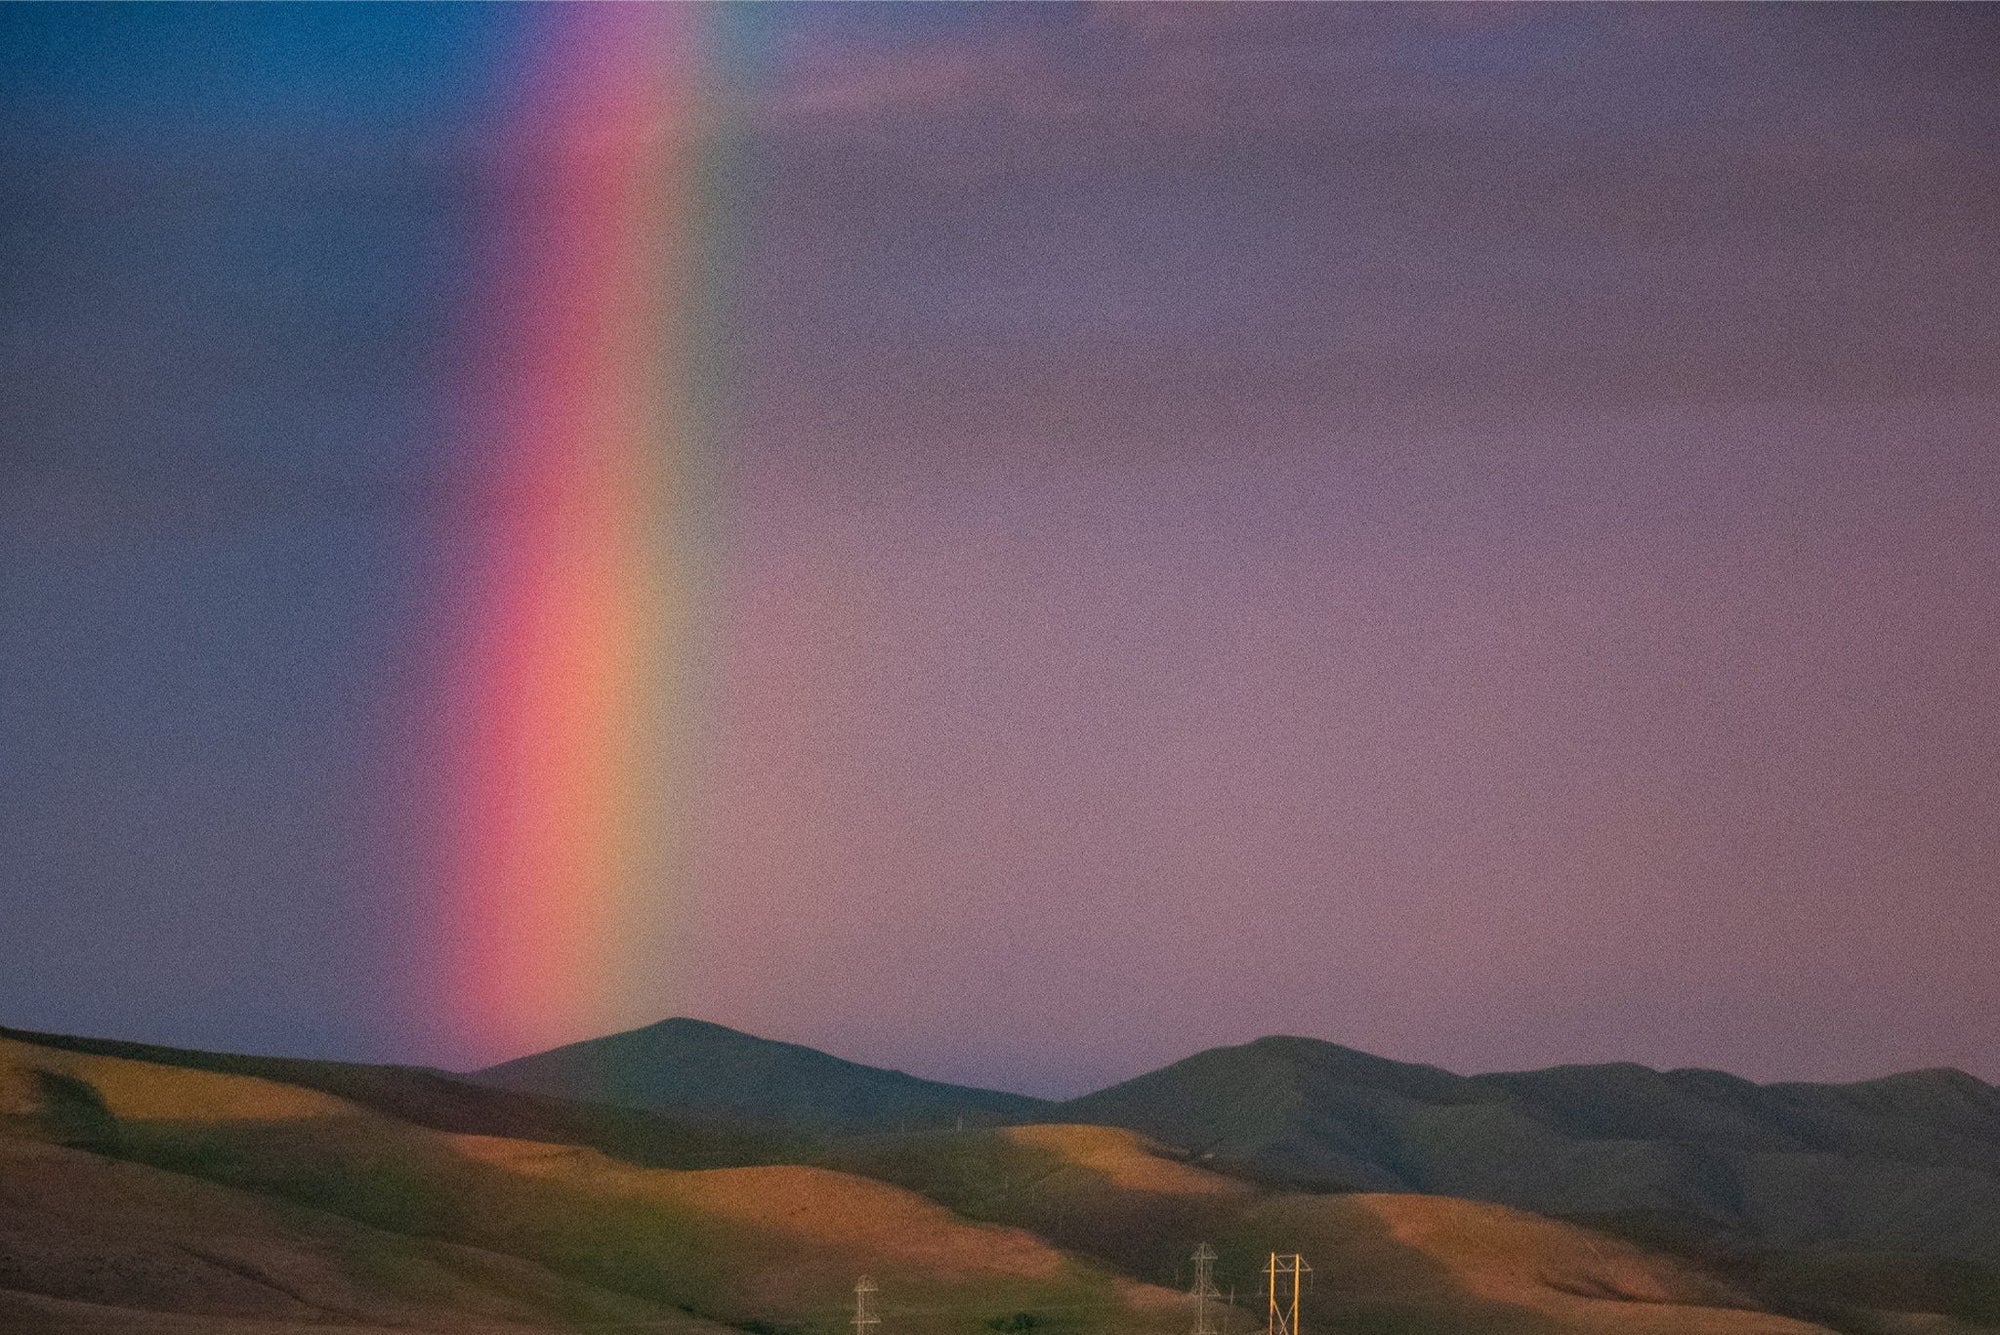 An image of a rainbow against a dark indigo sky